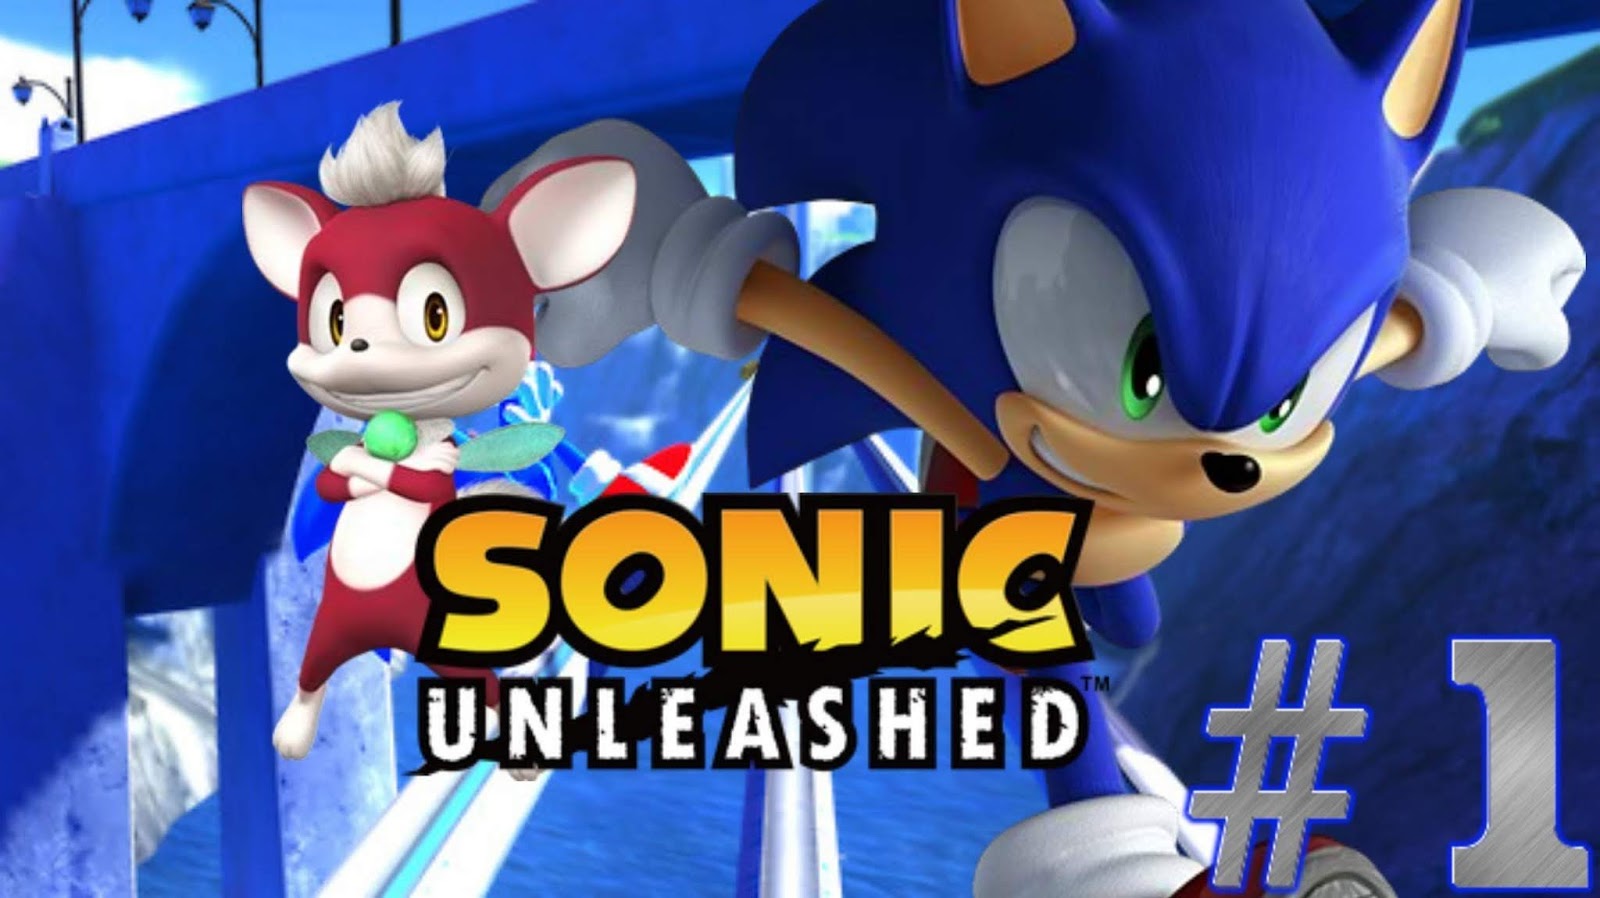 Мобиус анлишед. Sonic unleashed PLAYSTATION 3. Sonic unleashed (Xbox 360). Соник на Xbox 360. Sonic unleashed ISO Xbox 360 Rus.